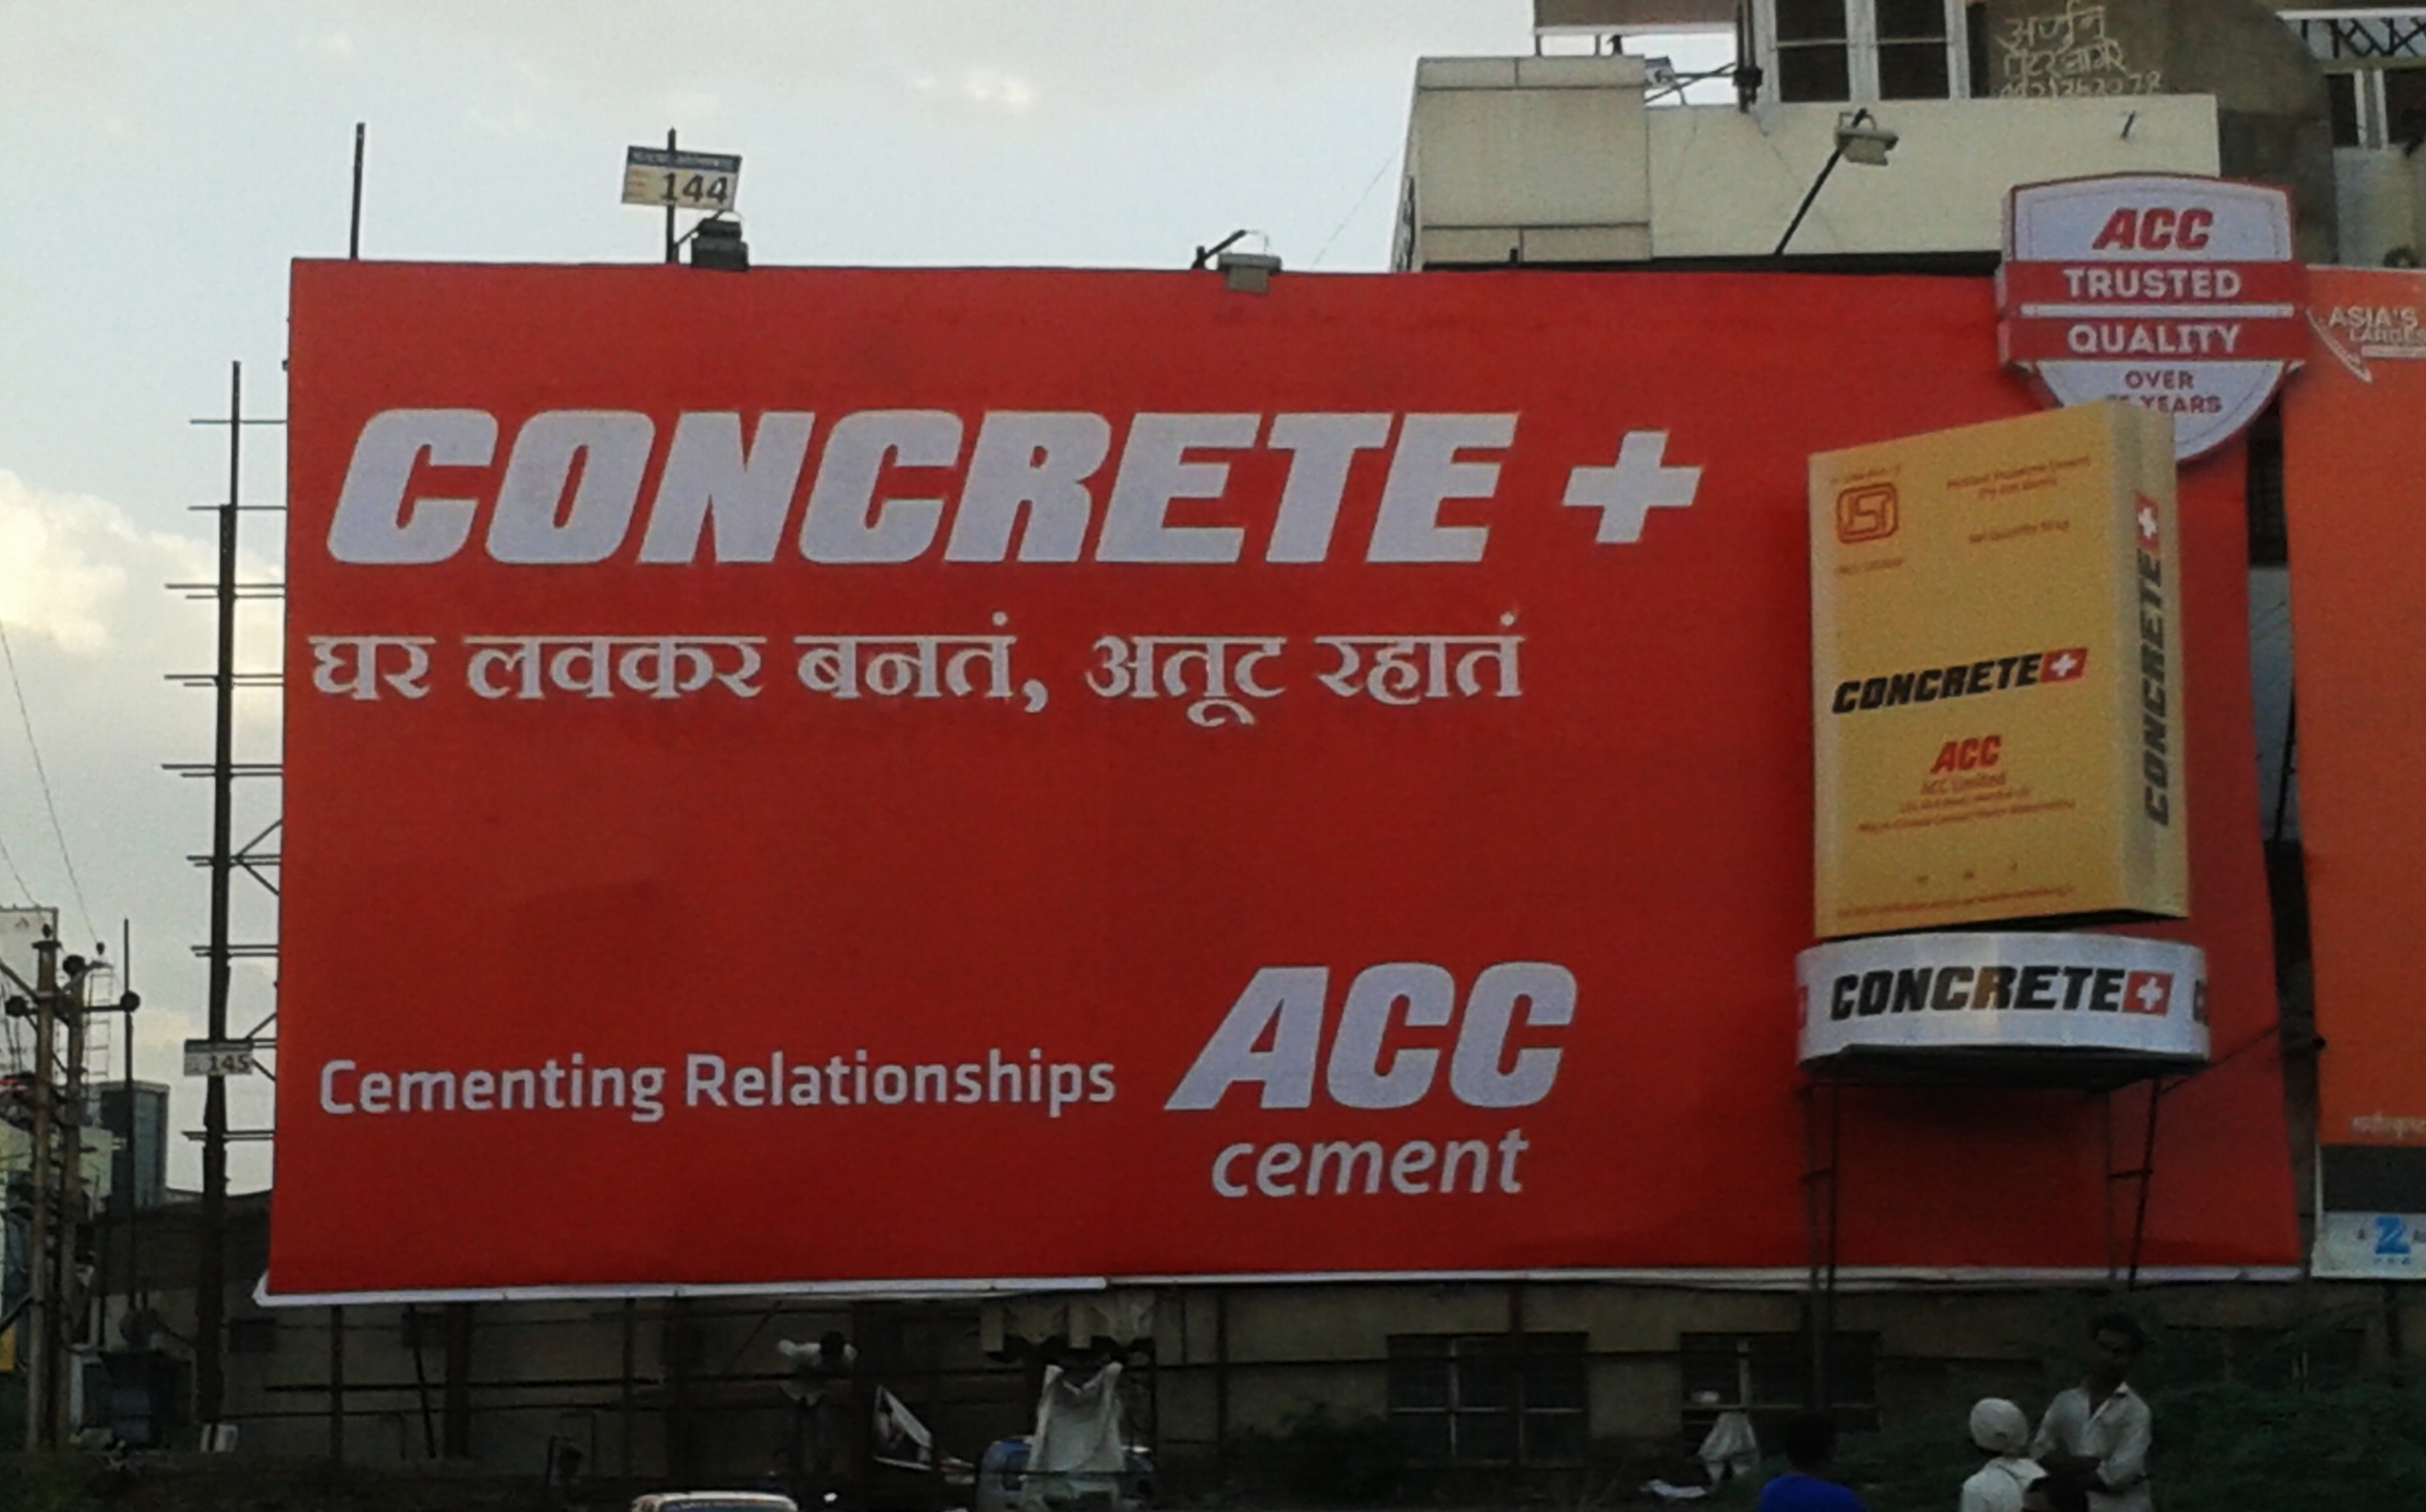 ACC Concrete Plus campaign gets high visibility